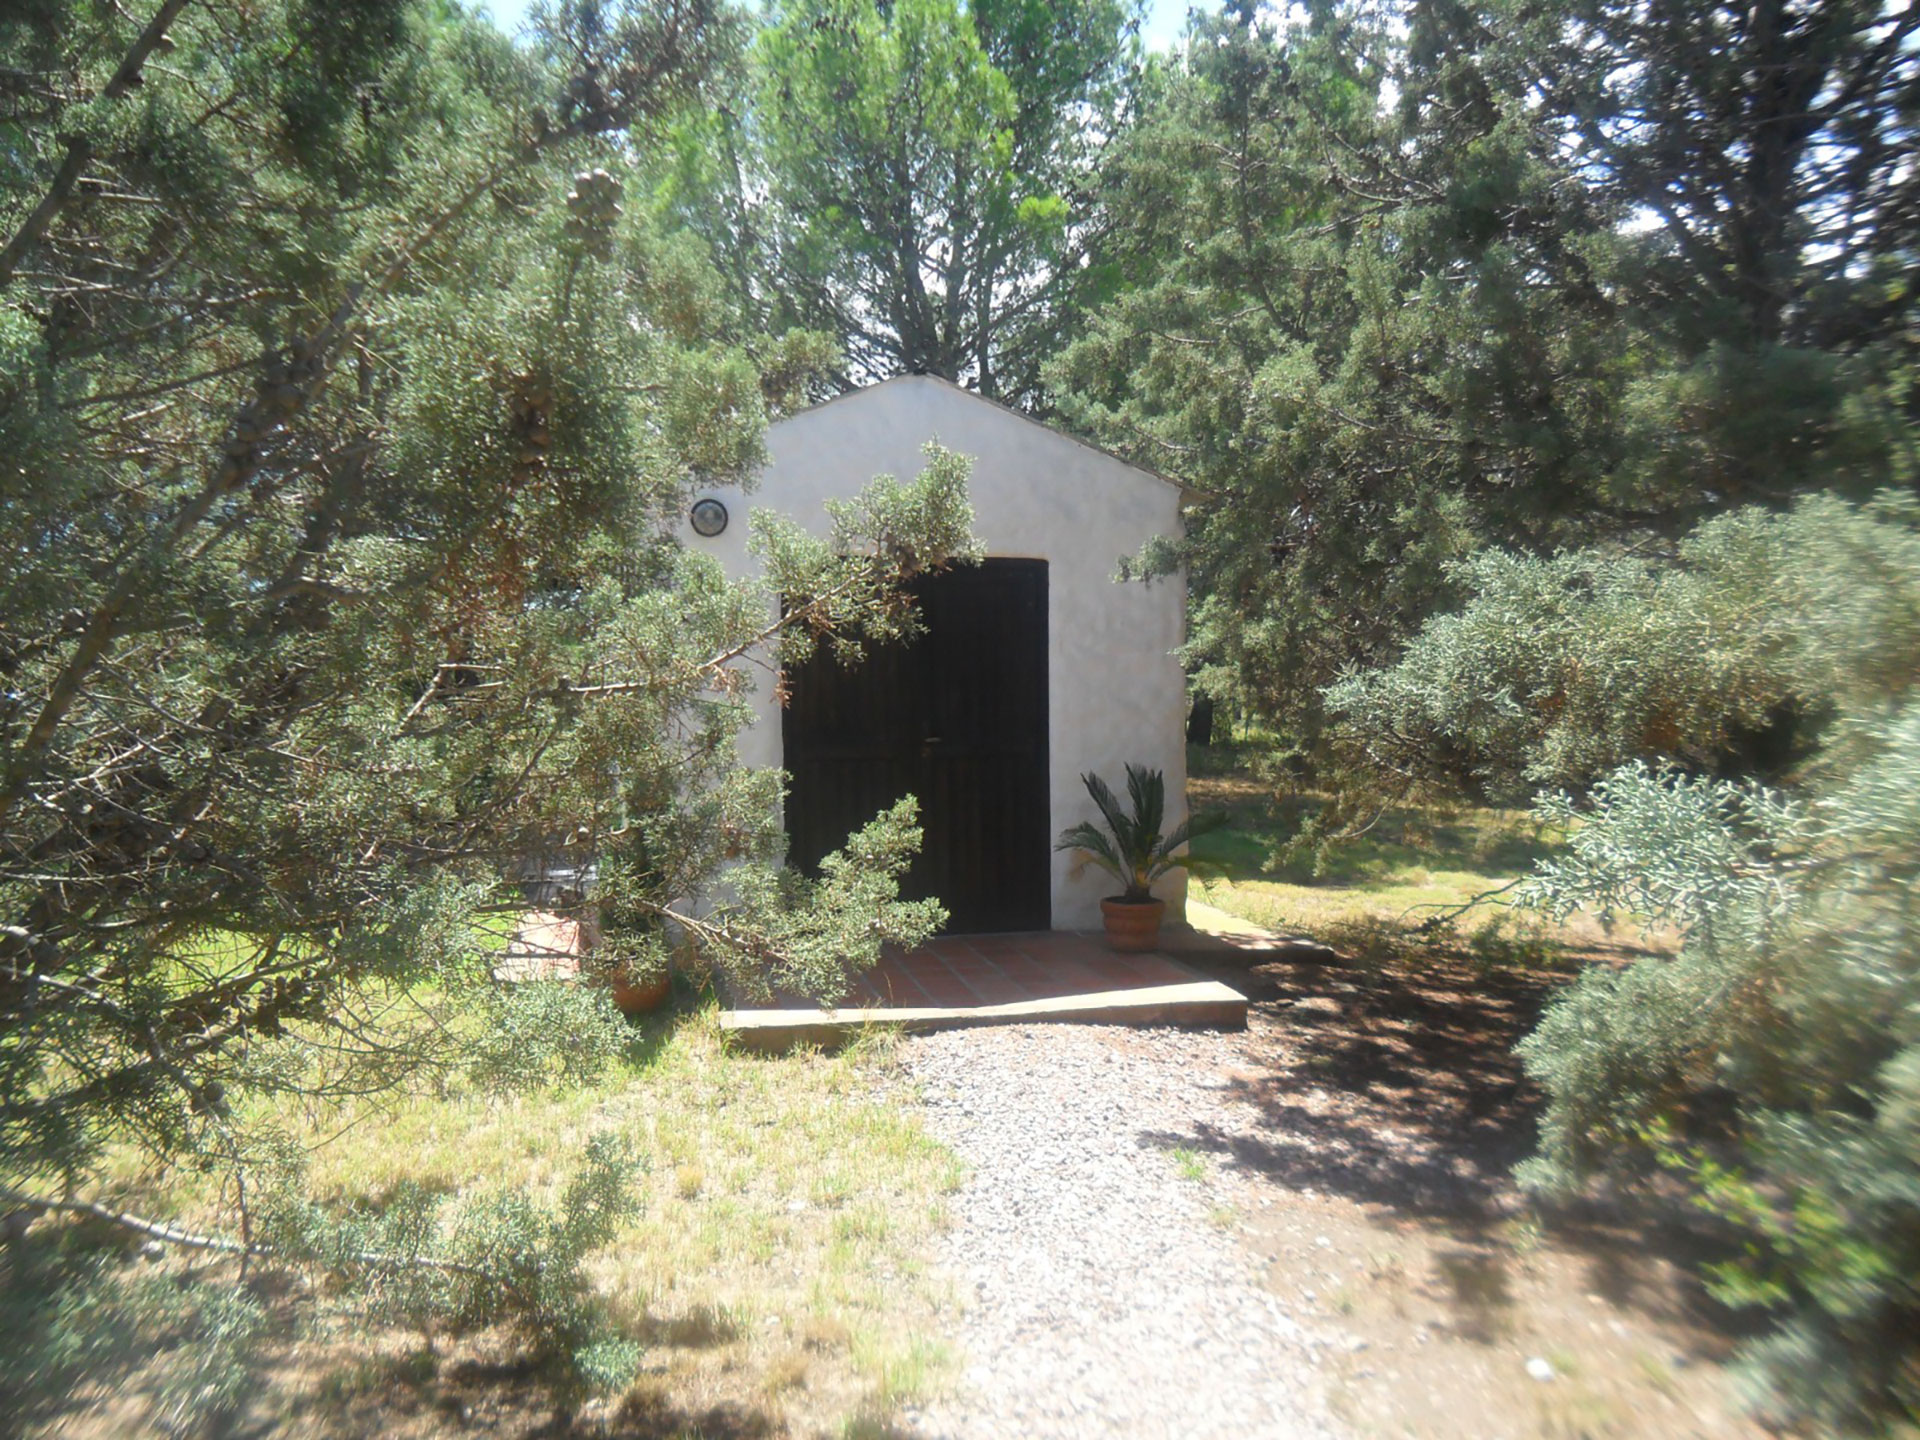 "La ermita", una habitación alejada utilizada únicamente por Padilla en el convento de San Martín, La Pampa